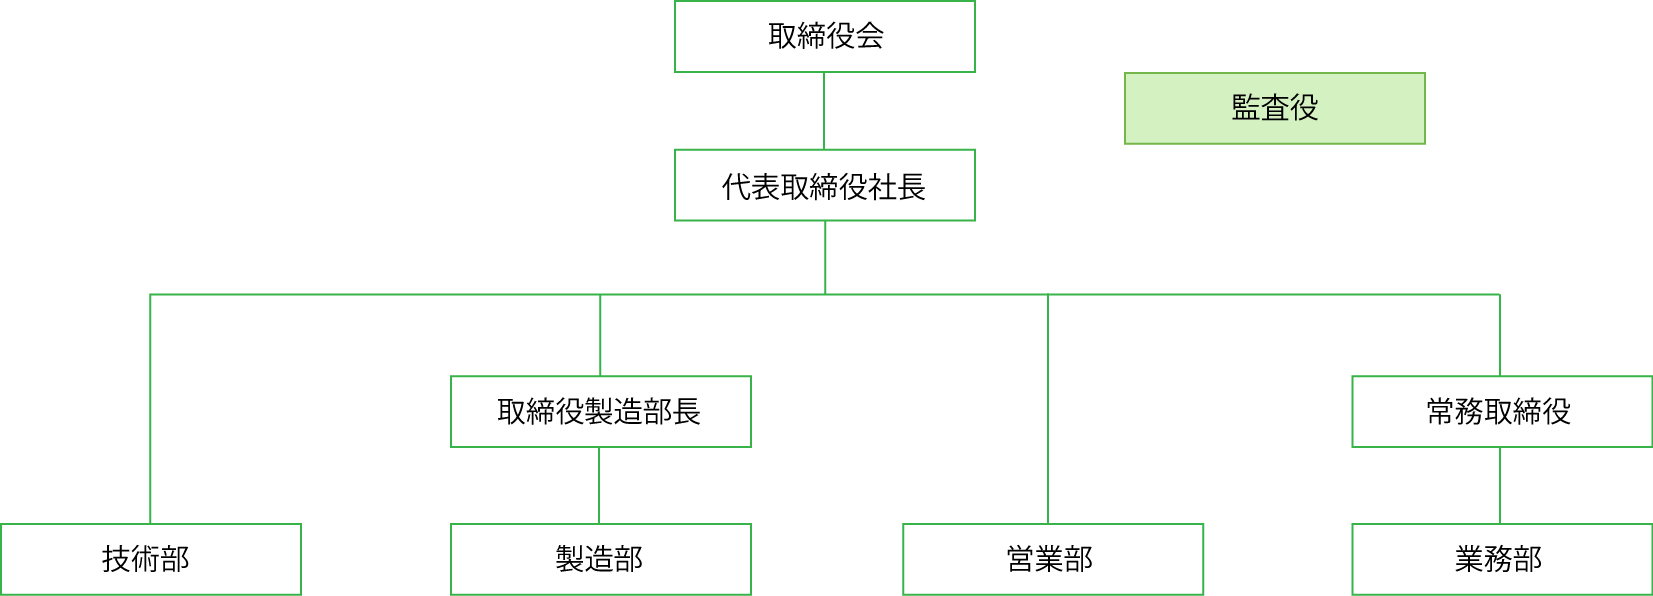 日本シードテクノ会社組織図